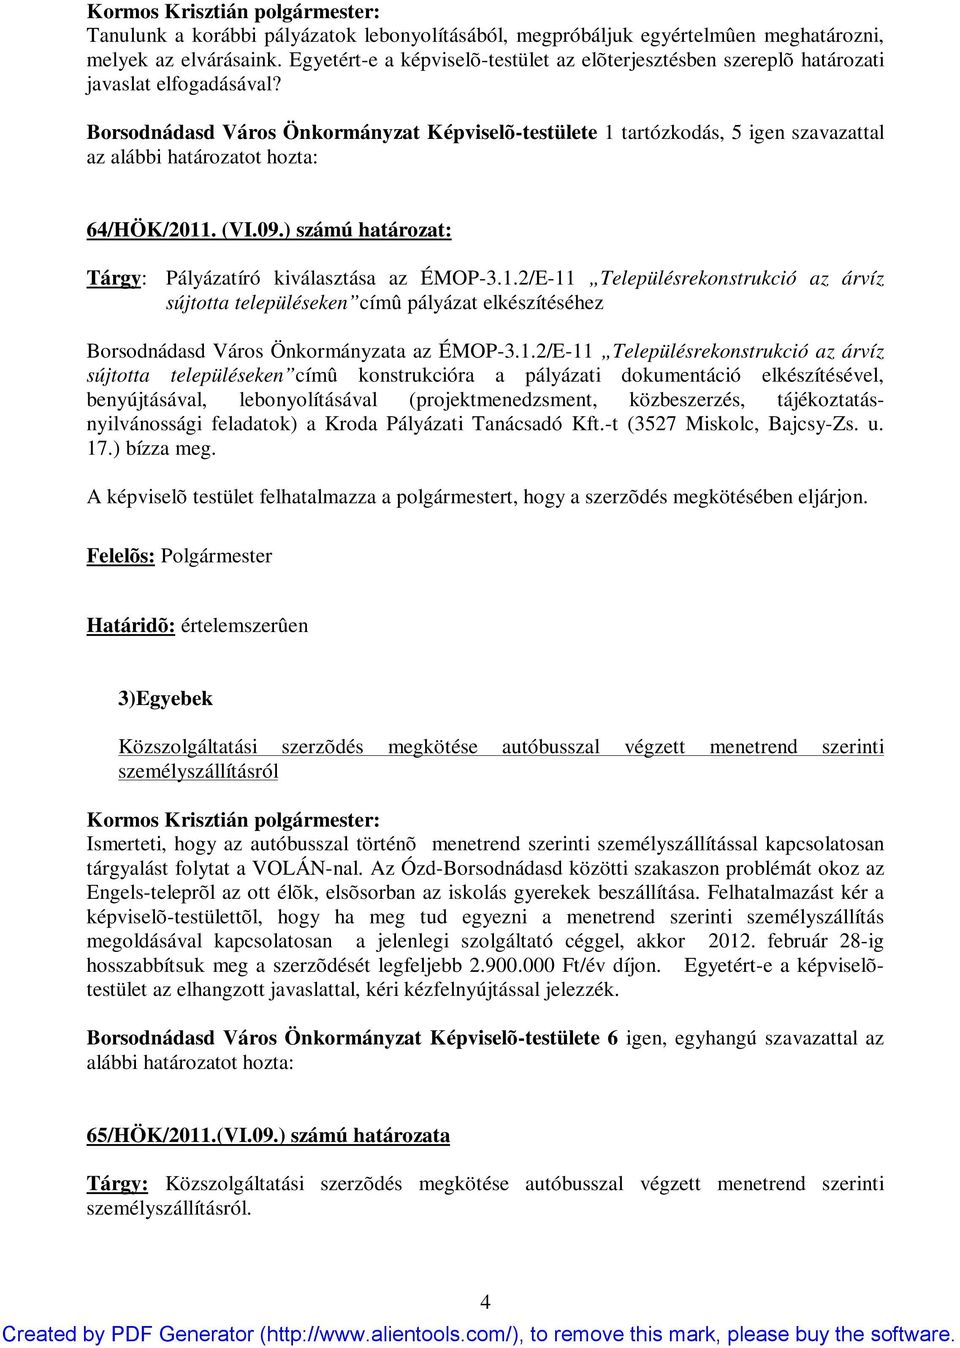 Borsodnádasd Város Önkormányzat Képviselõ-testülete 1 tartózkodás, 5 igen szavazattal az alábbi határozatot hozta: 64/HÖK/2011. (VI.09.) számú határozat: Tárgy: Pályázatíró kiválasztása az ÉMOP-3.1.2/E-11 Településrekonstrukció az árvíz sújtotta településeken címû pályázat elkészítéséhez Borsodnádasd Város Önkormányzata az ÉMOP-3.